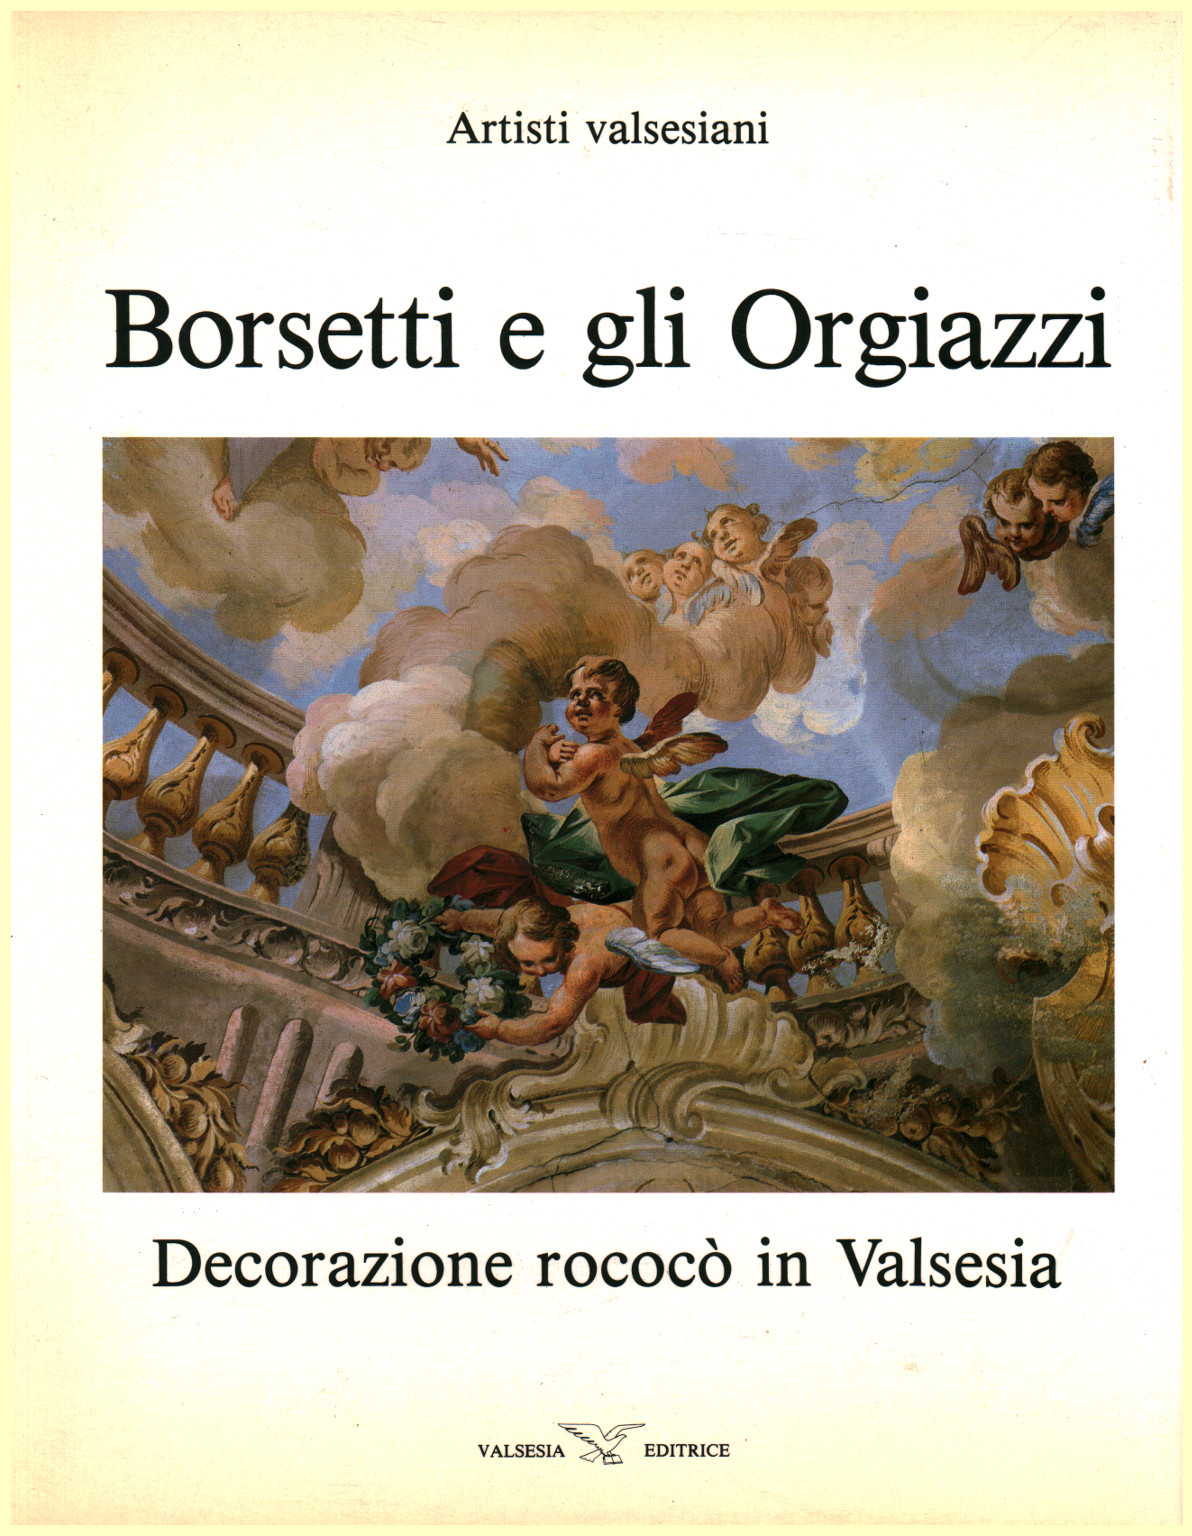 Borsetti e gli Orgiazzi, s.a.